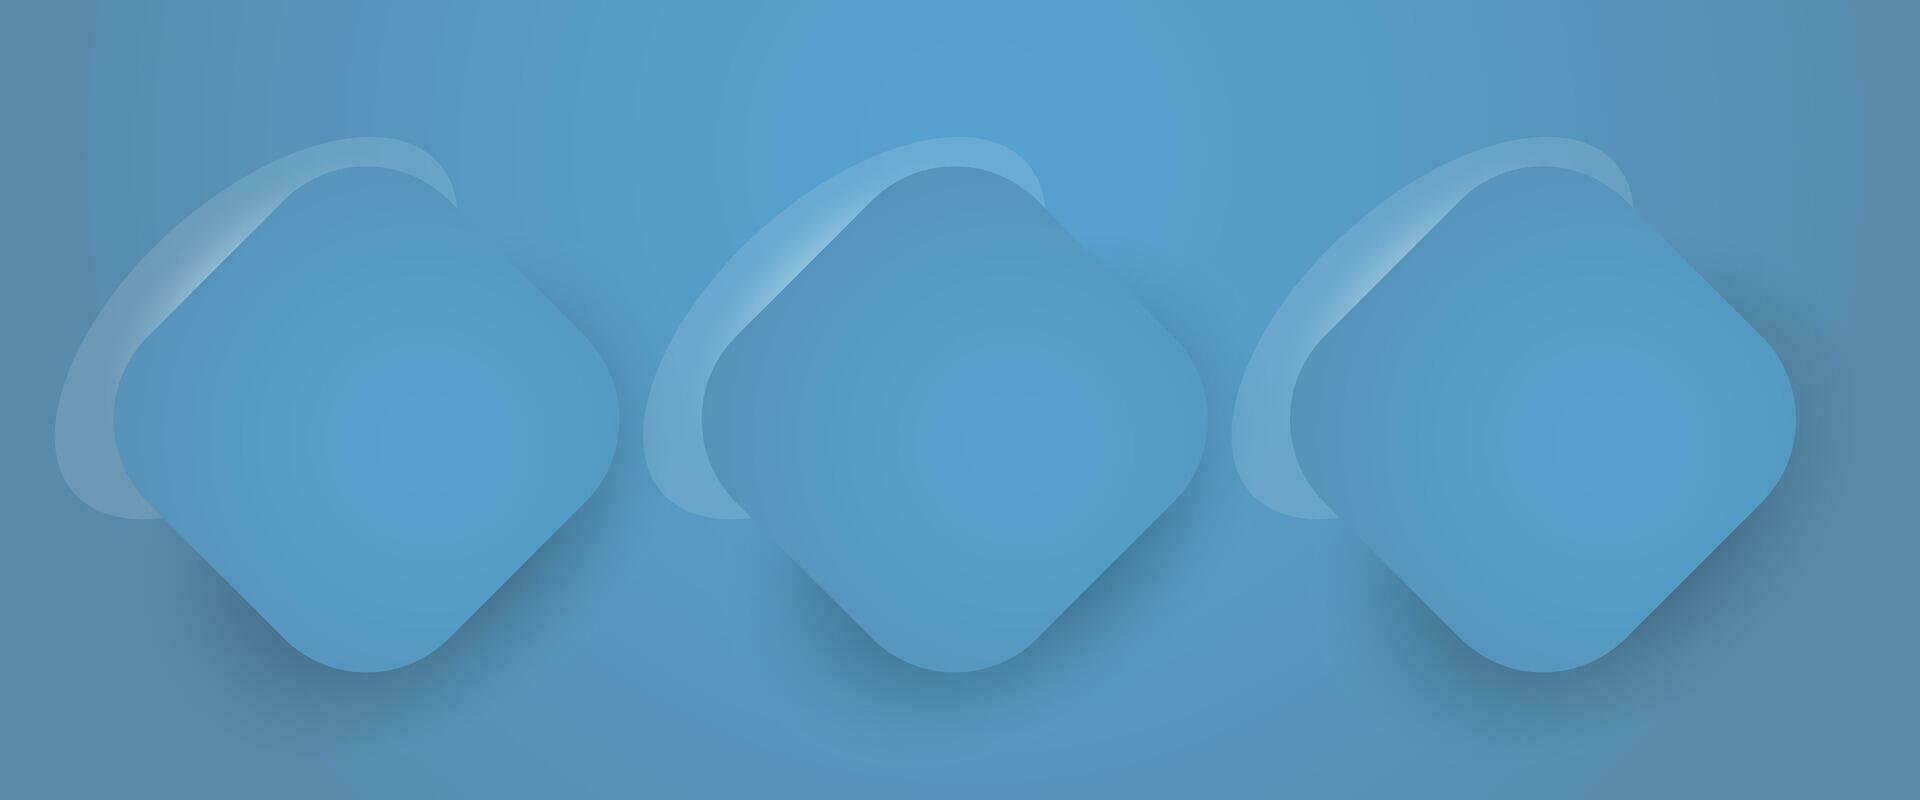 conjunto do três azul abstrato polígonos formas pano de fundo para Cosmético produtos. coleção do 3 geométrico elegante verde fundo com cópia de espaço, vetor ilustração